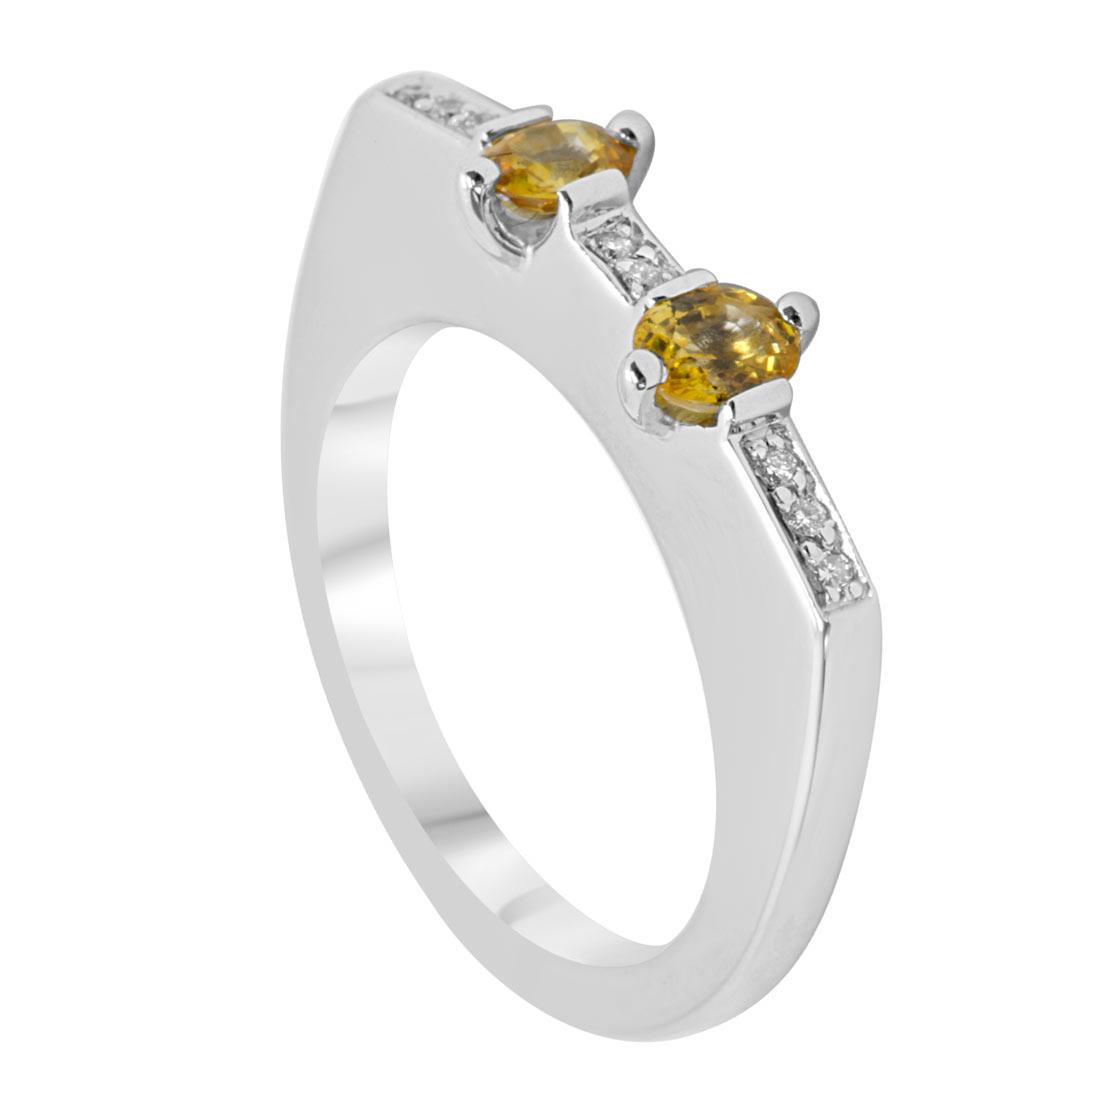 Anello in oro bianco con diamanti e zaffiri gialli mis 15 - ALFIERI & ST. JOHN